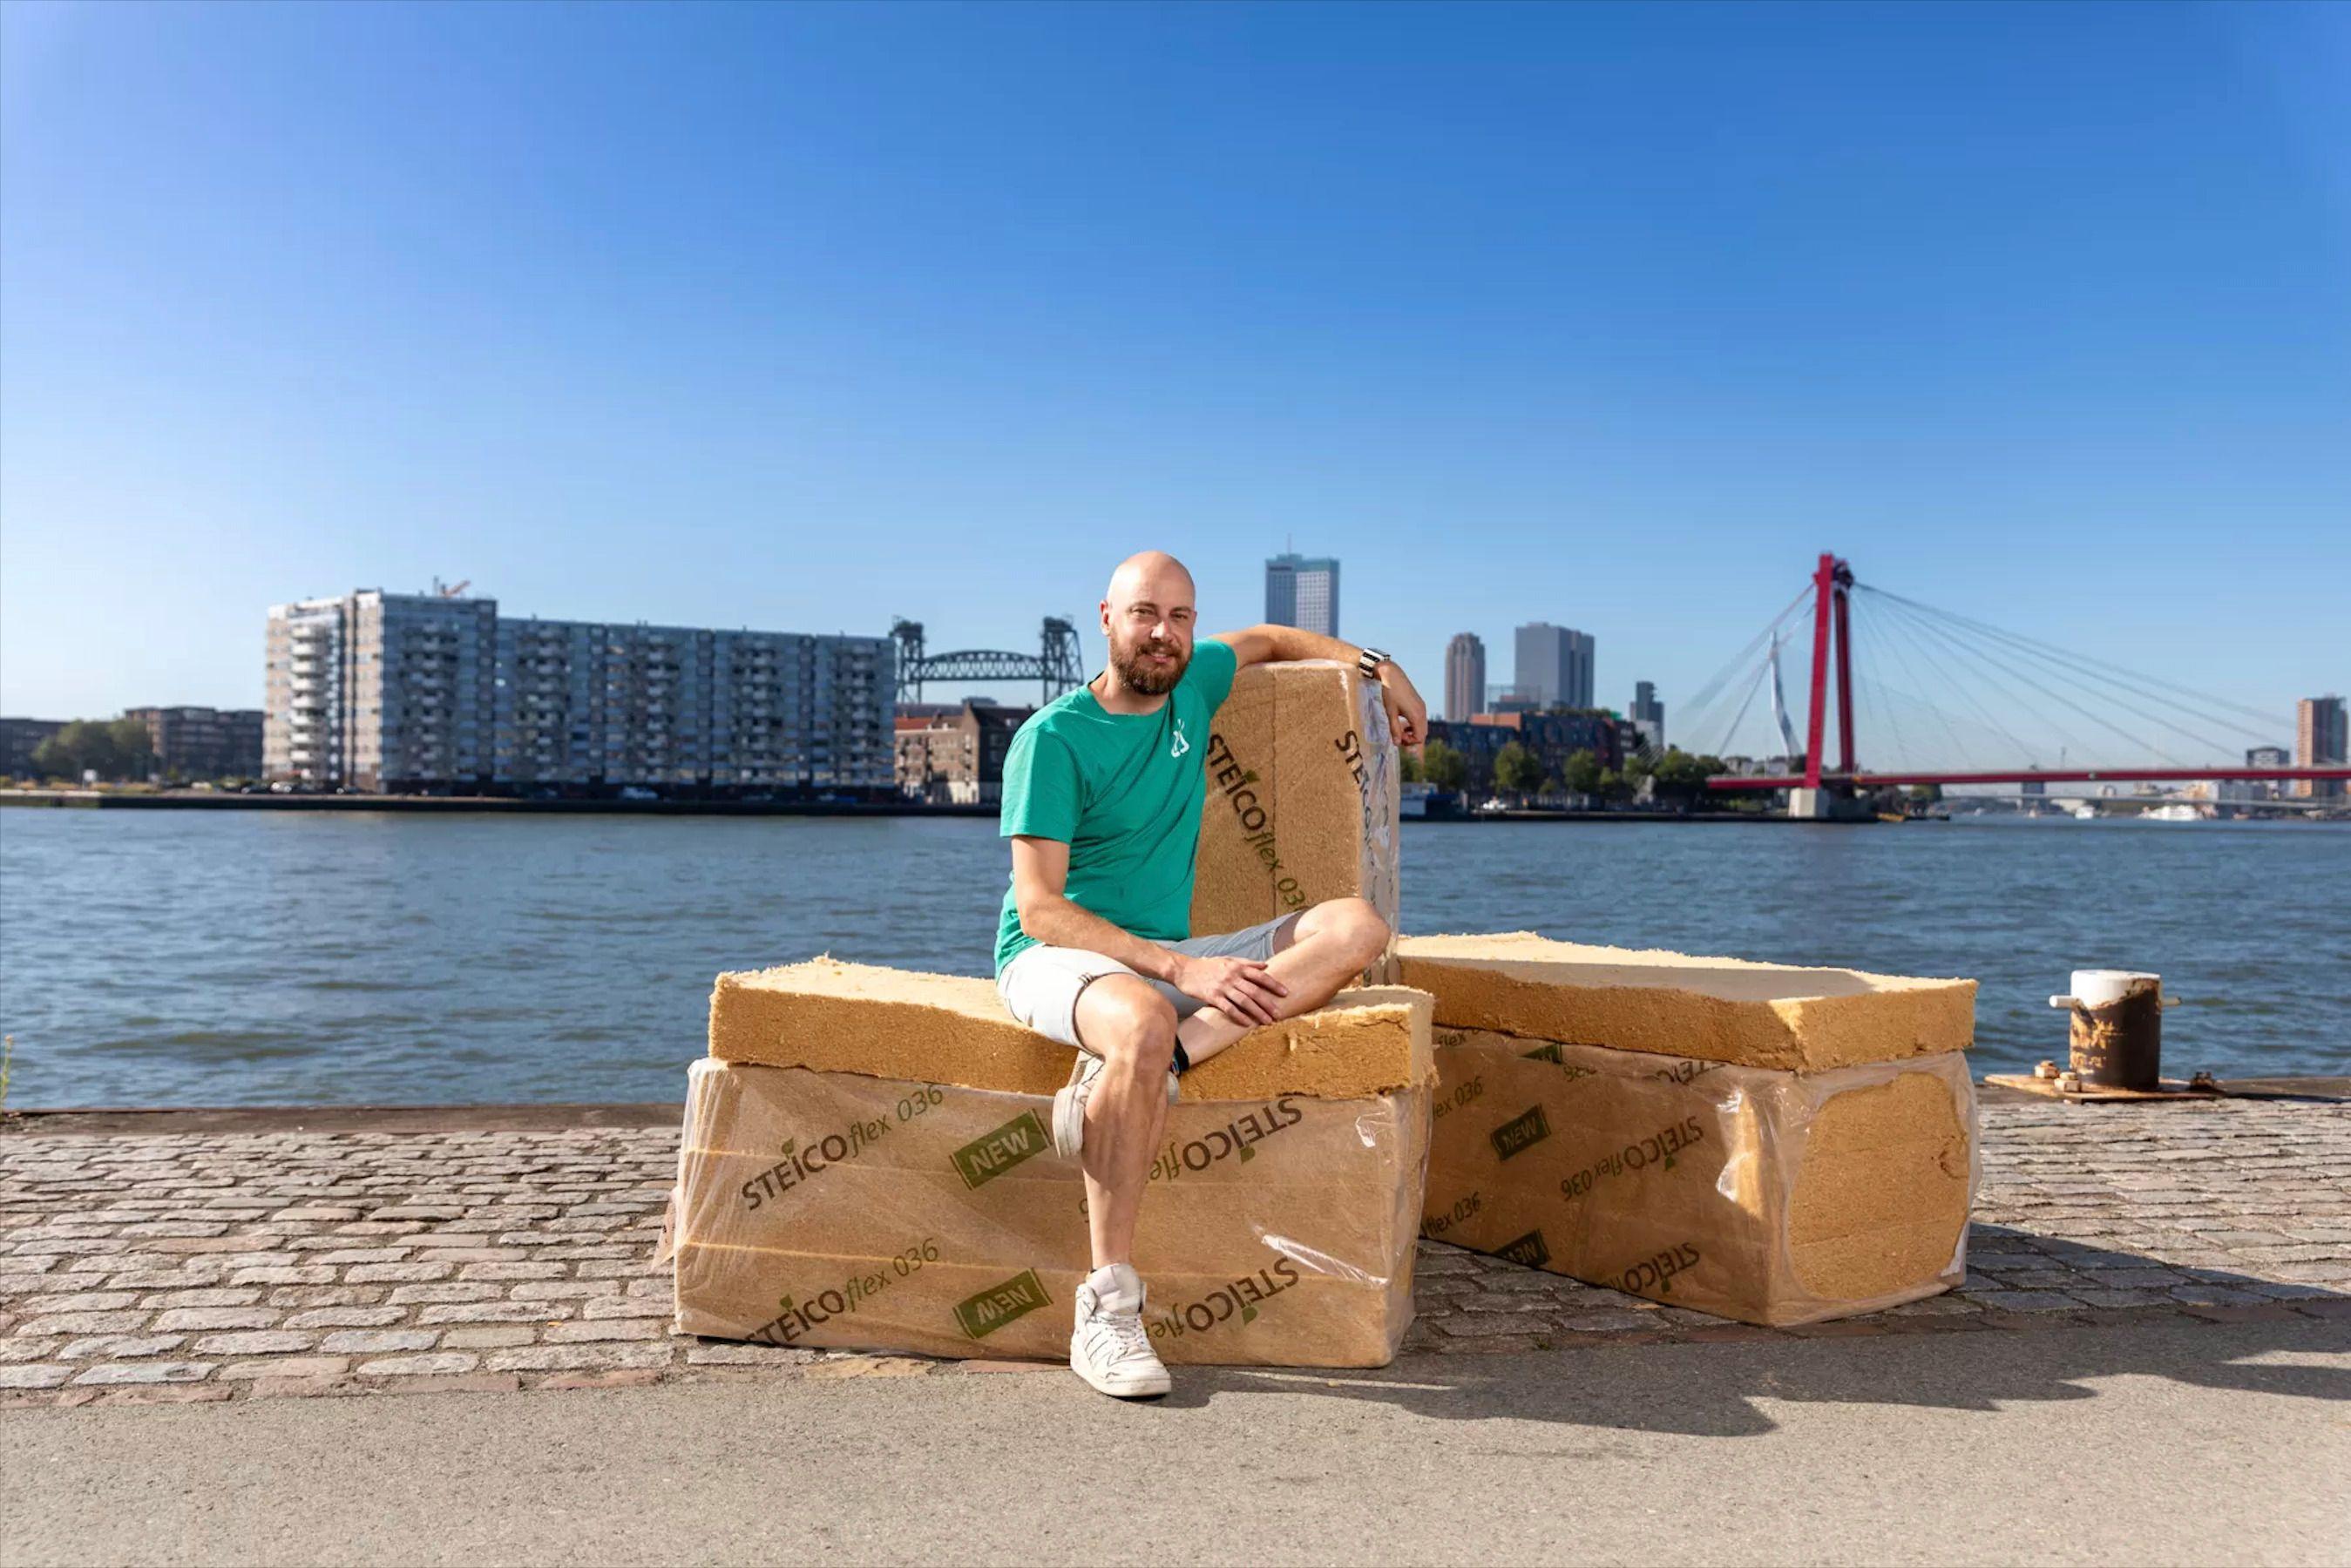 Joost van der Waal van Isoleerbewust isoleert Rotterdamse huizen met ecologische materialen